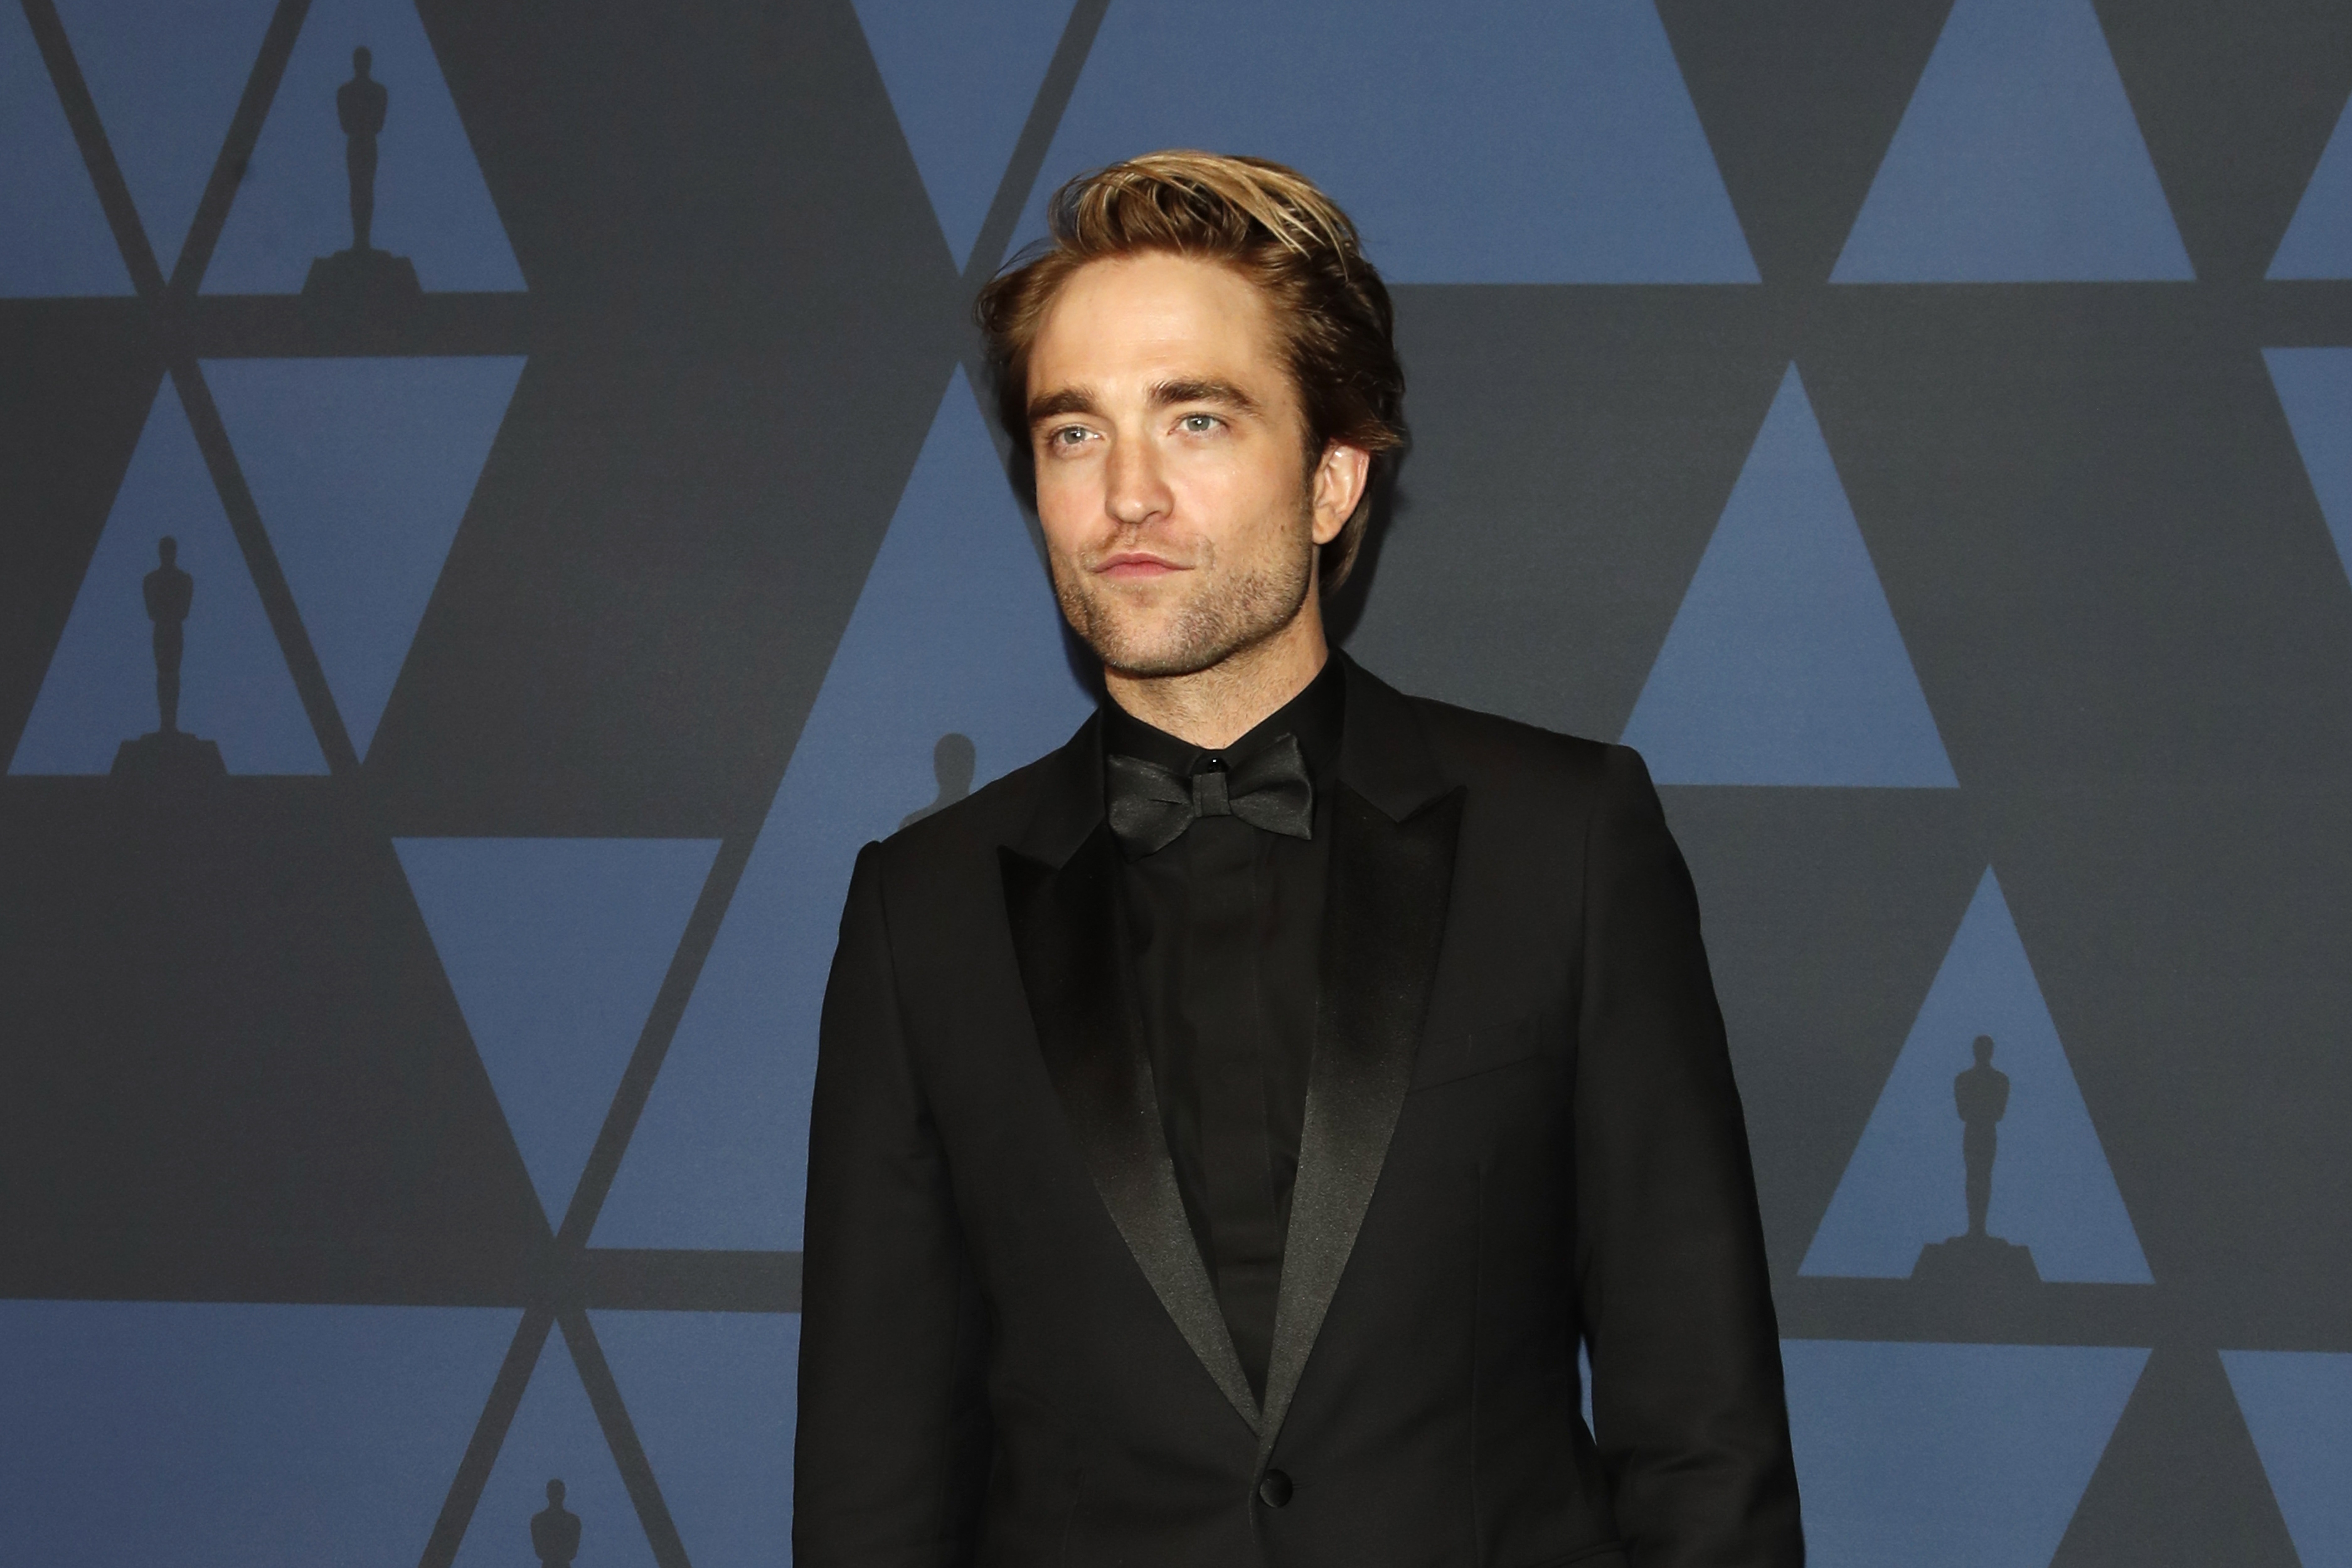 El filme protagonizado por Pattinson se estrenará en marzo del 2022 (Foto: EFE/EPA/NINA PROMMER)